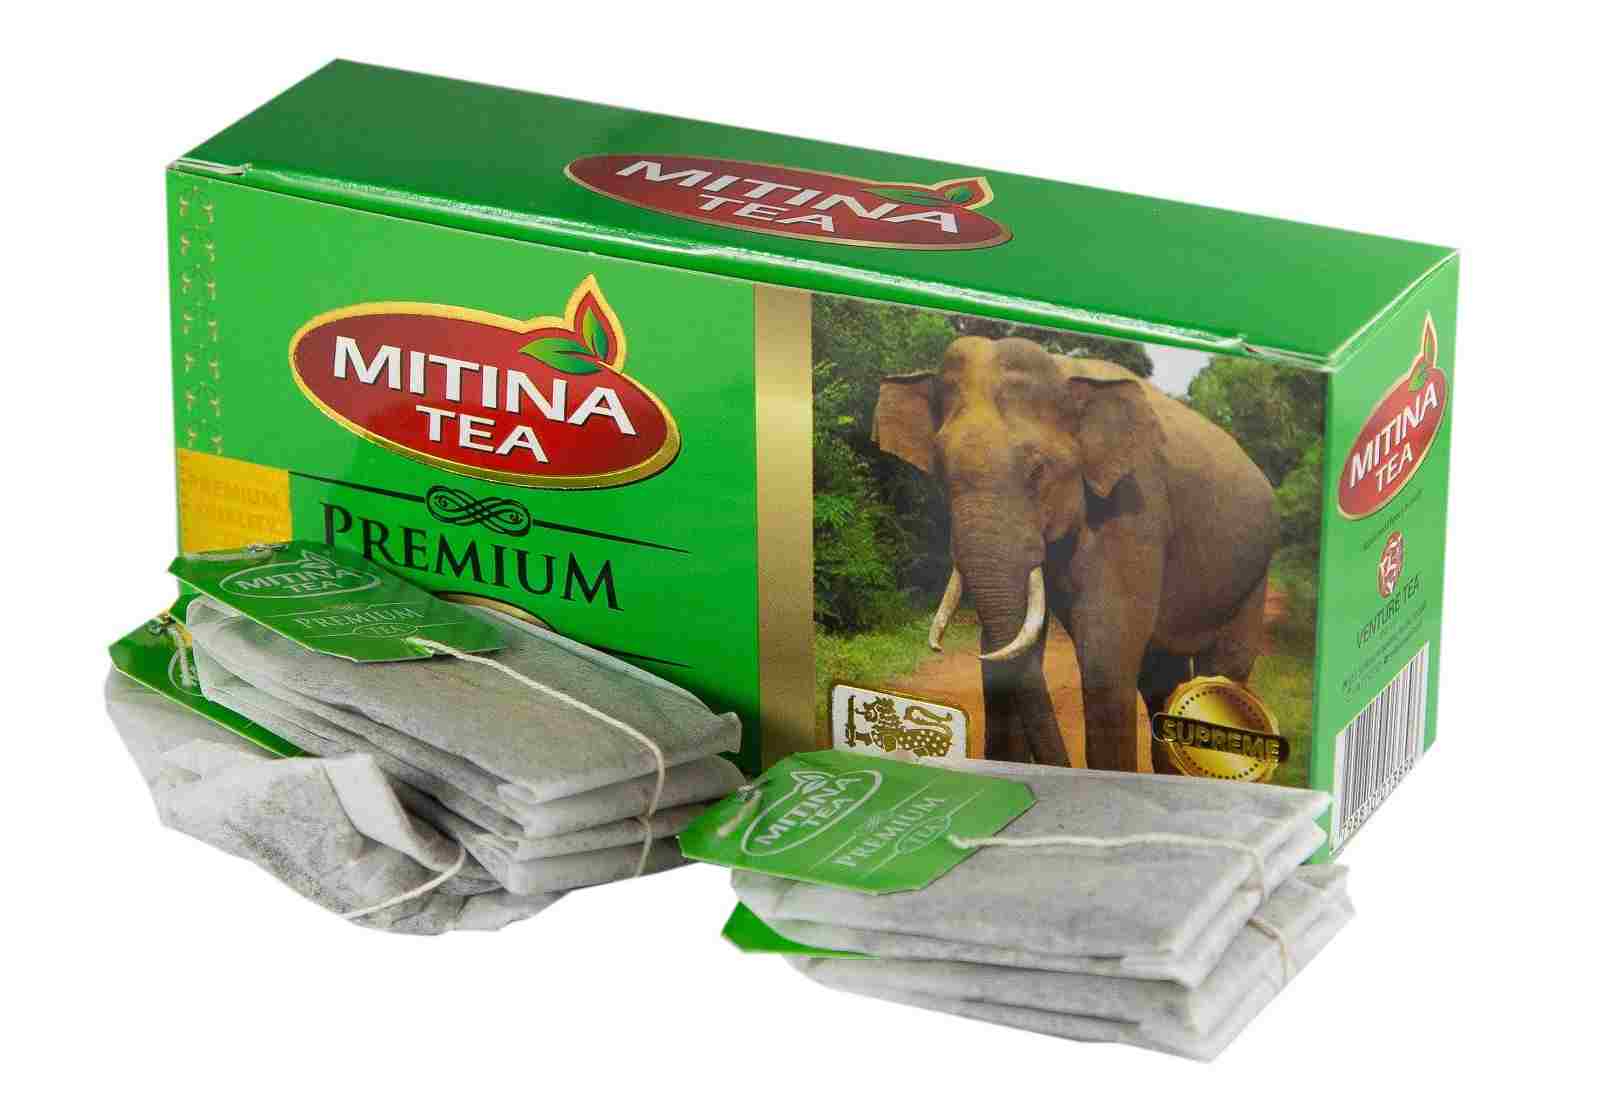 Цейлонский чай в пакетиках